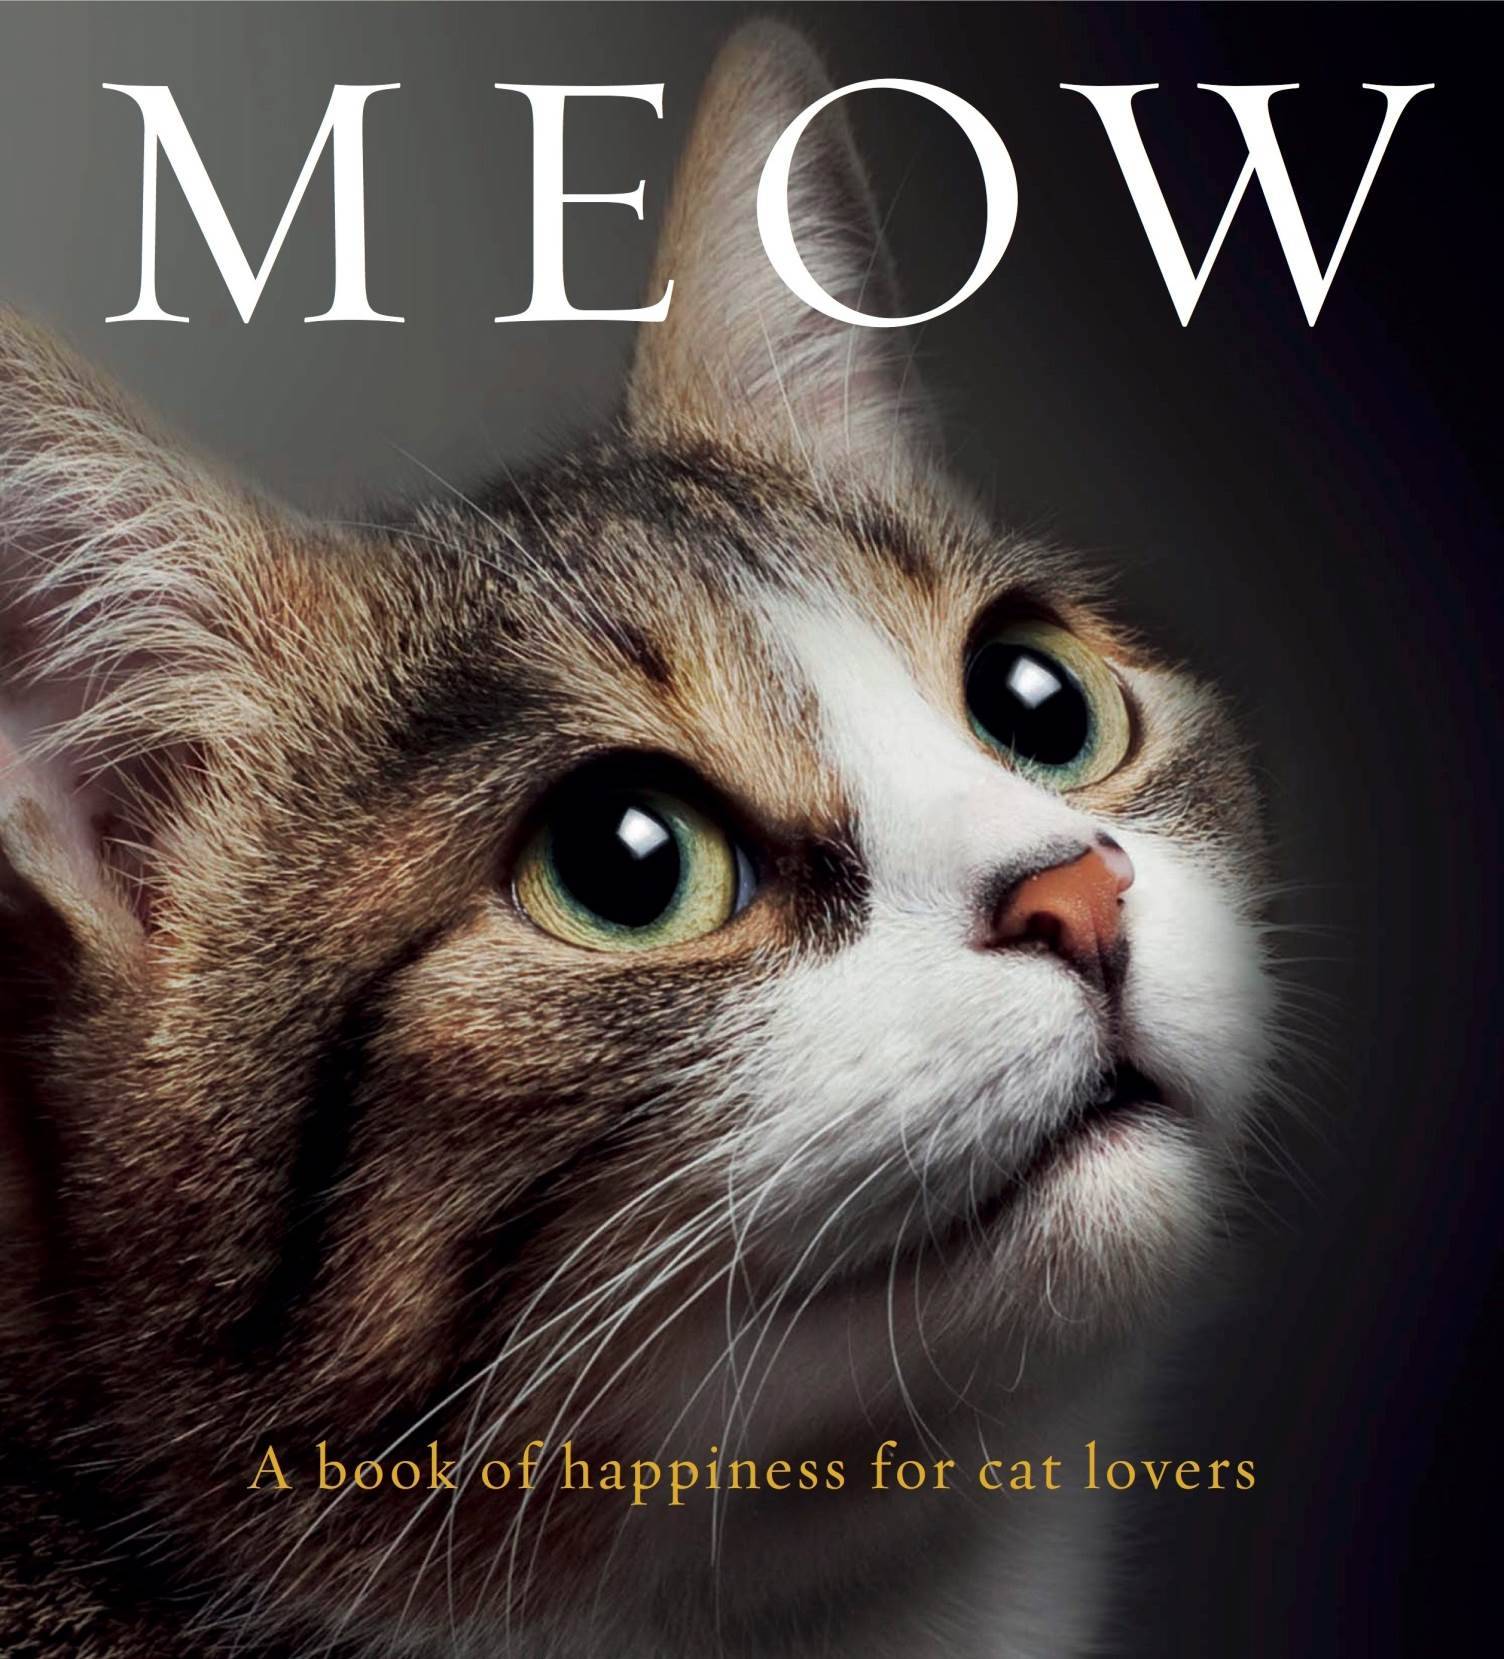 Mews: MEOW